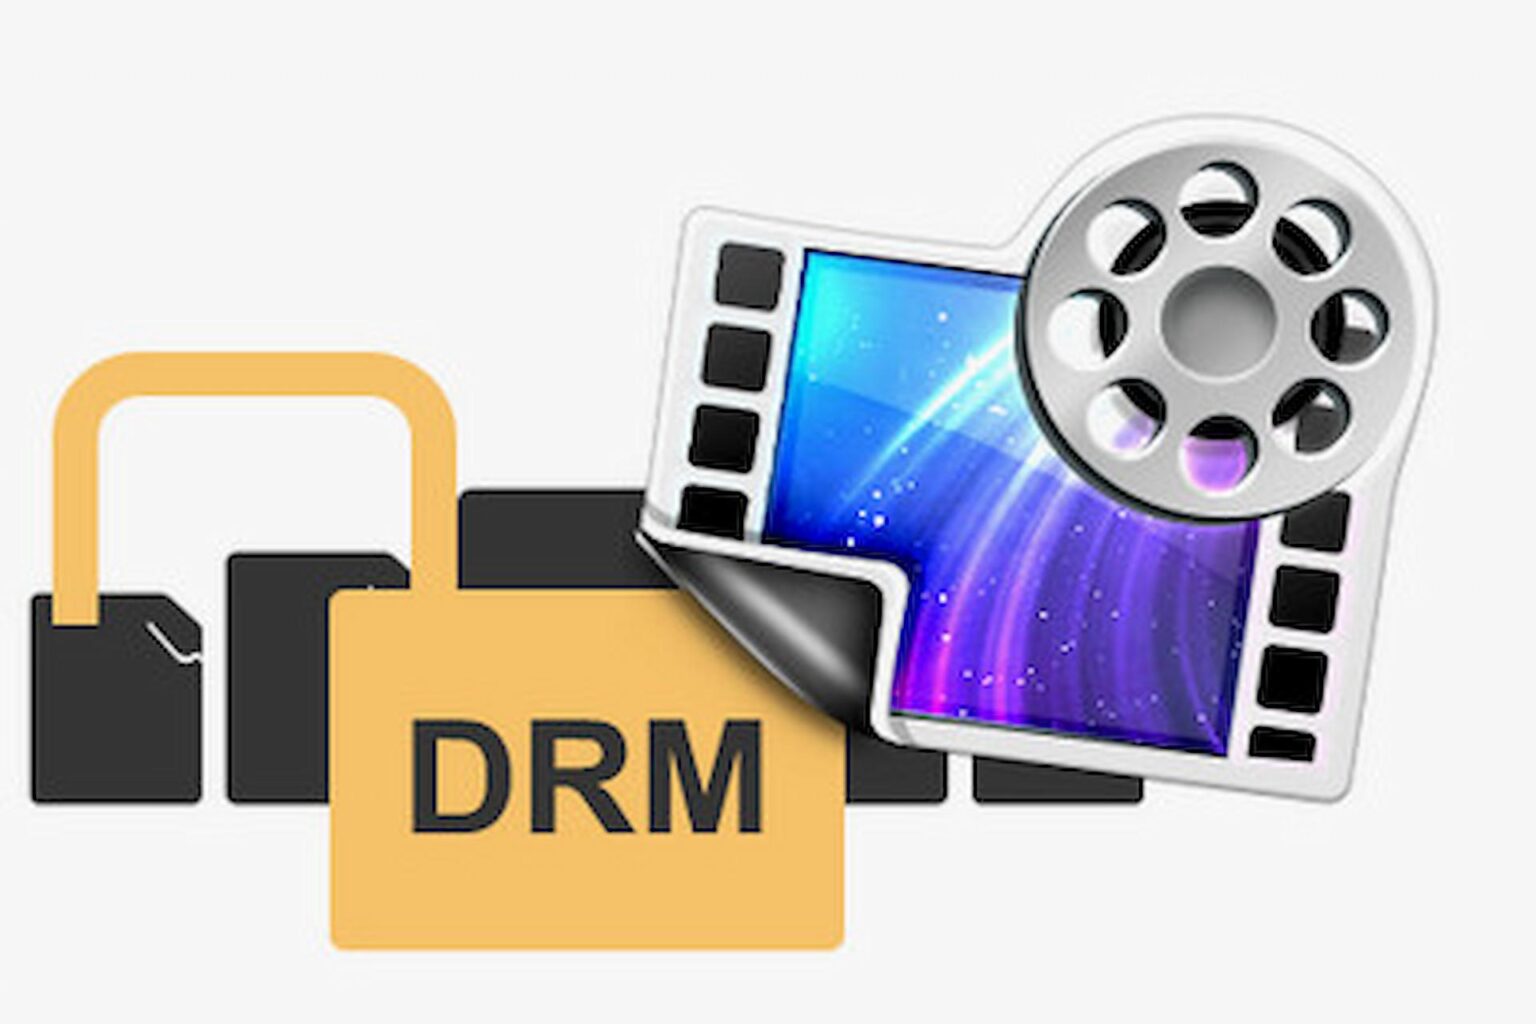 DRM-Play. DRM-Play com. DRM TV. DRM Player. Drm play провайдер